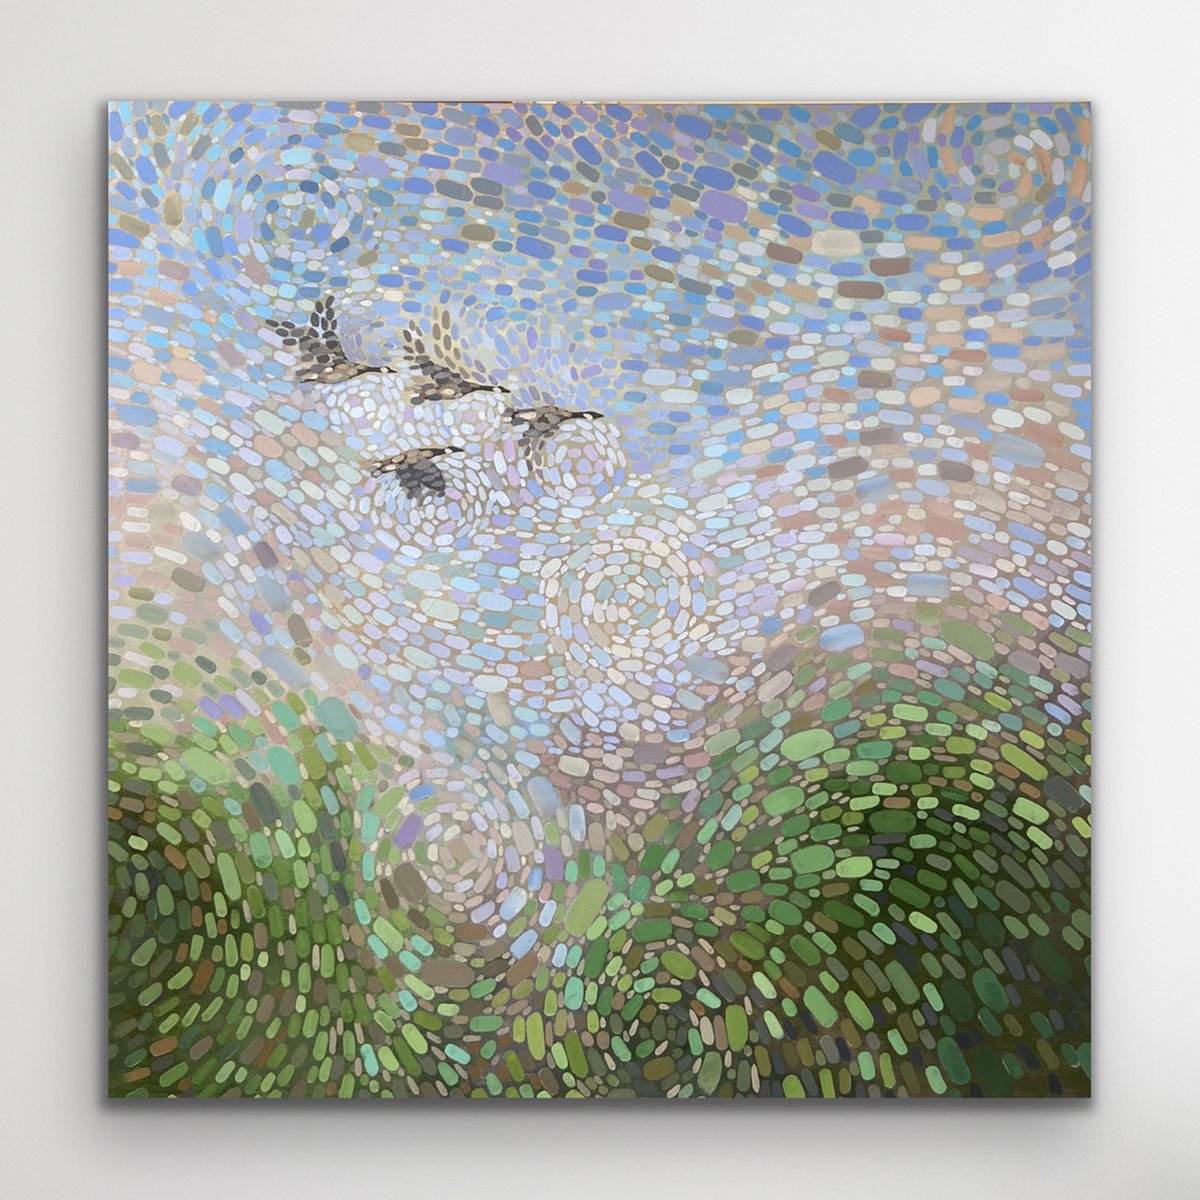 Four Flying Geese by Kristen Pobatschnig